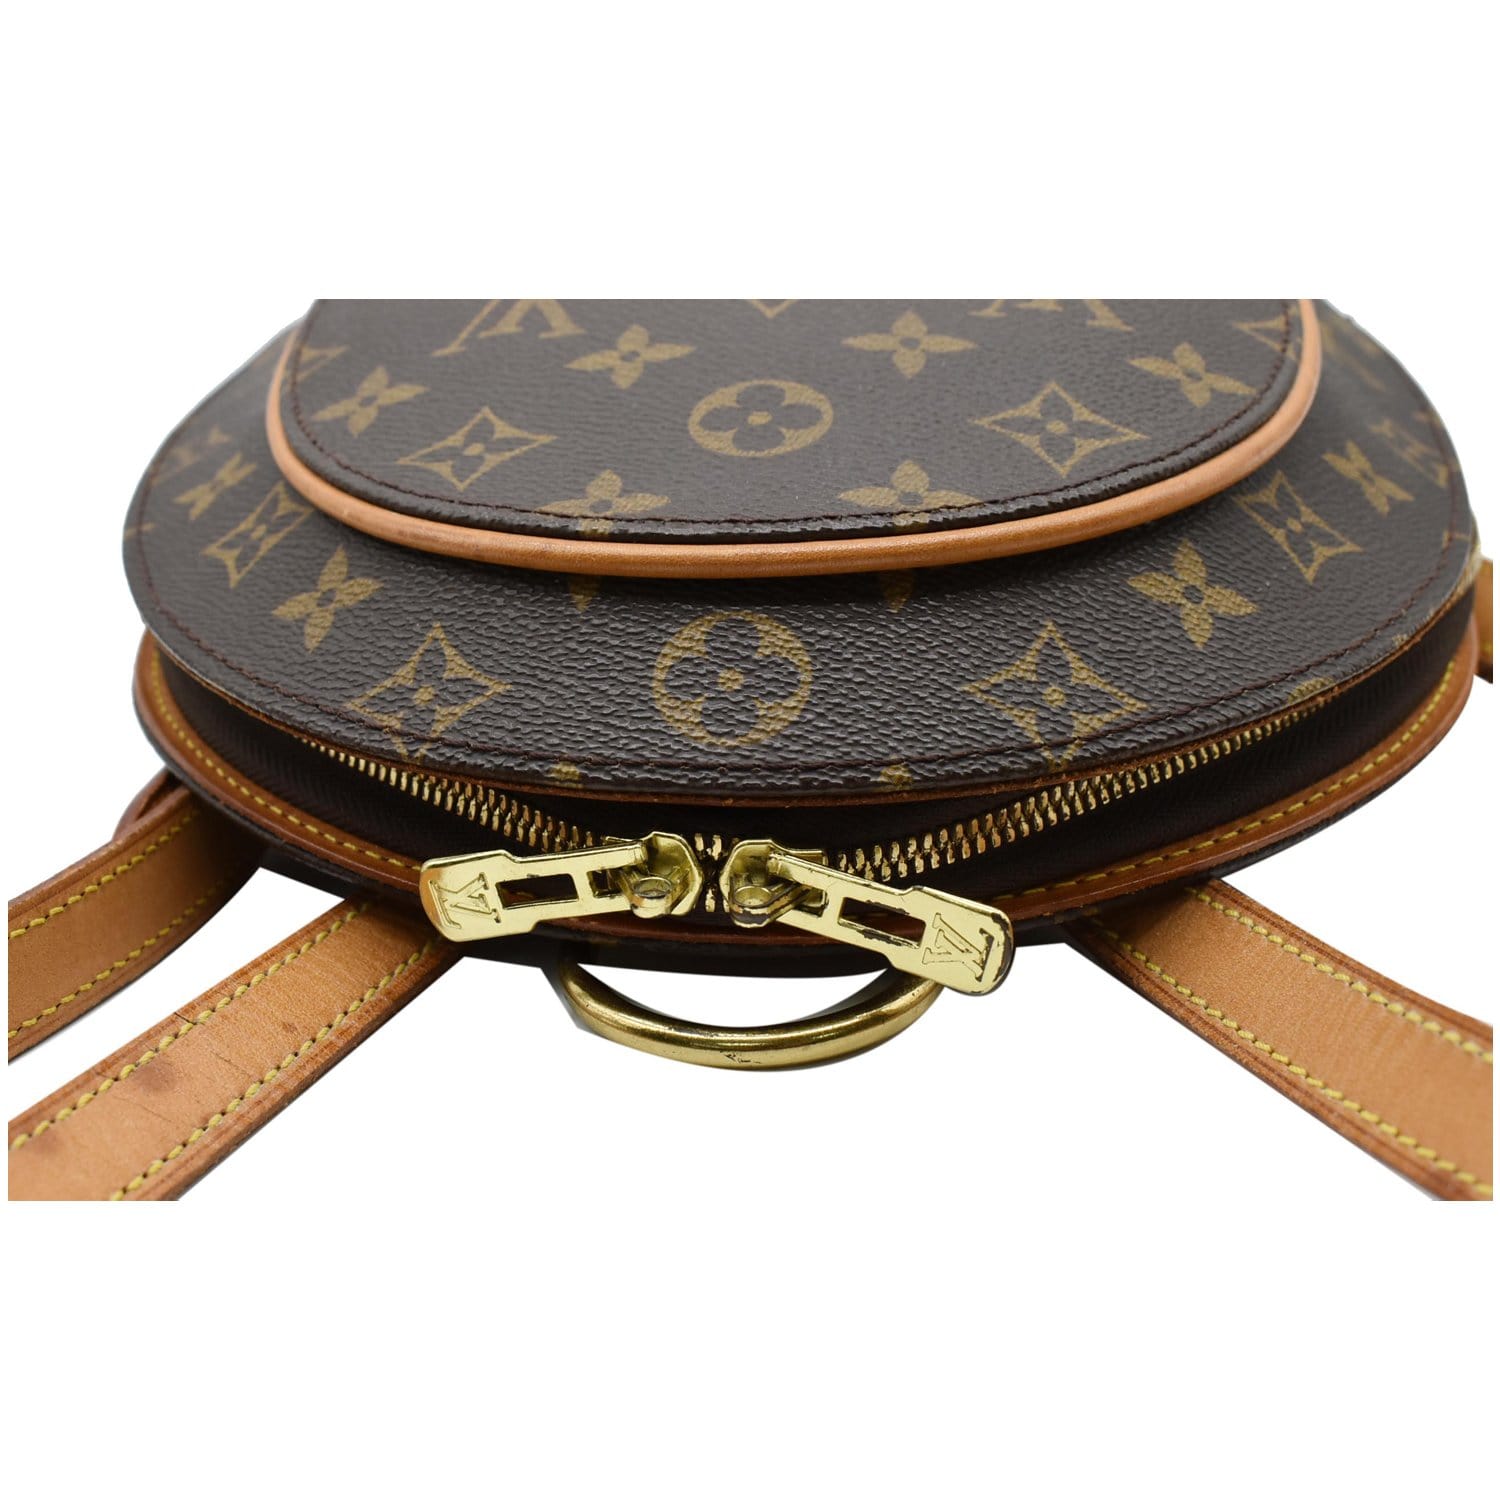 Louis Vuitton, Bags, Authentic Louis Vuitton Ellipse Backpack Sac A Dos  Adjustable Straps